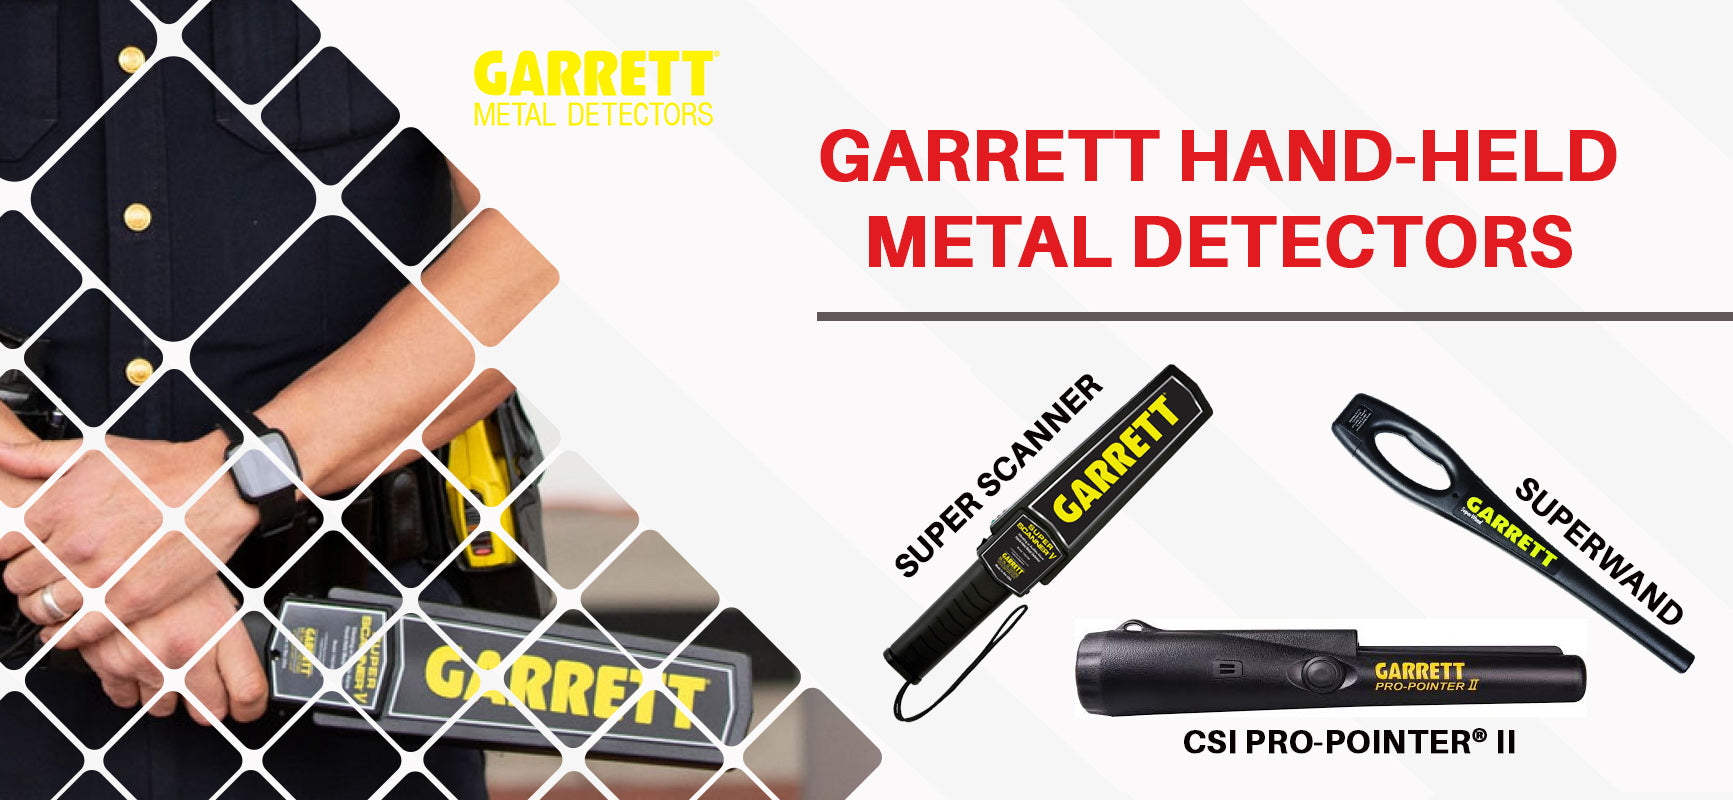 GARRETT Super Scanner V Détecteur de métaux portatif professionnel